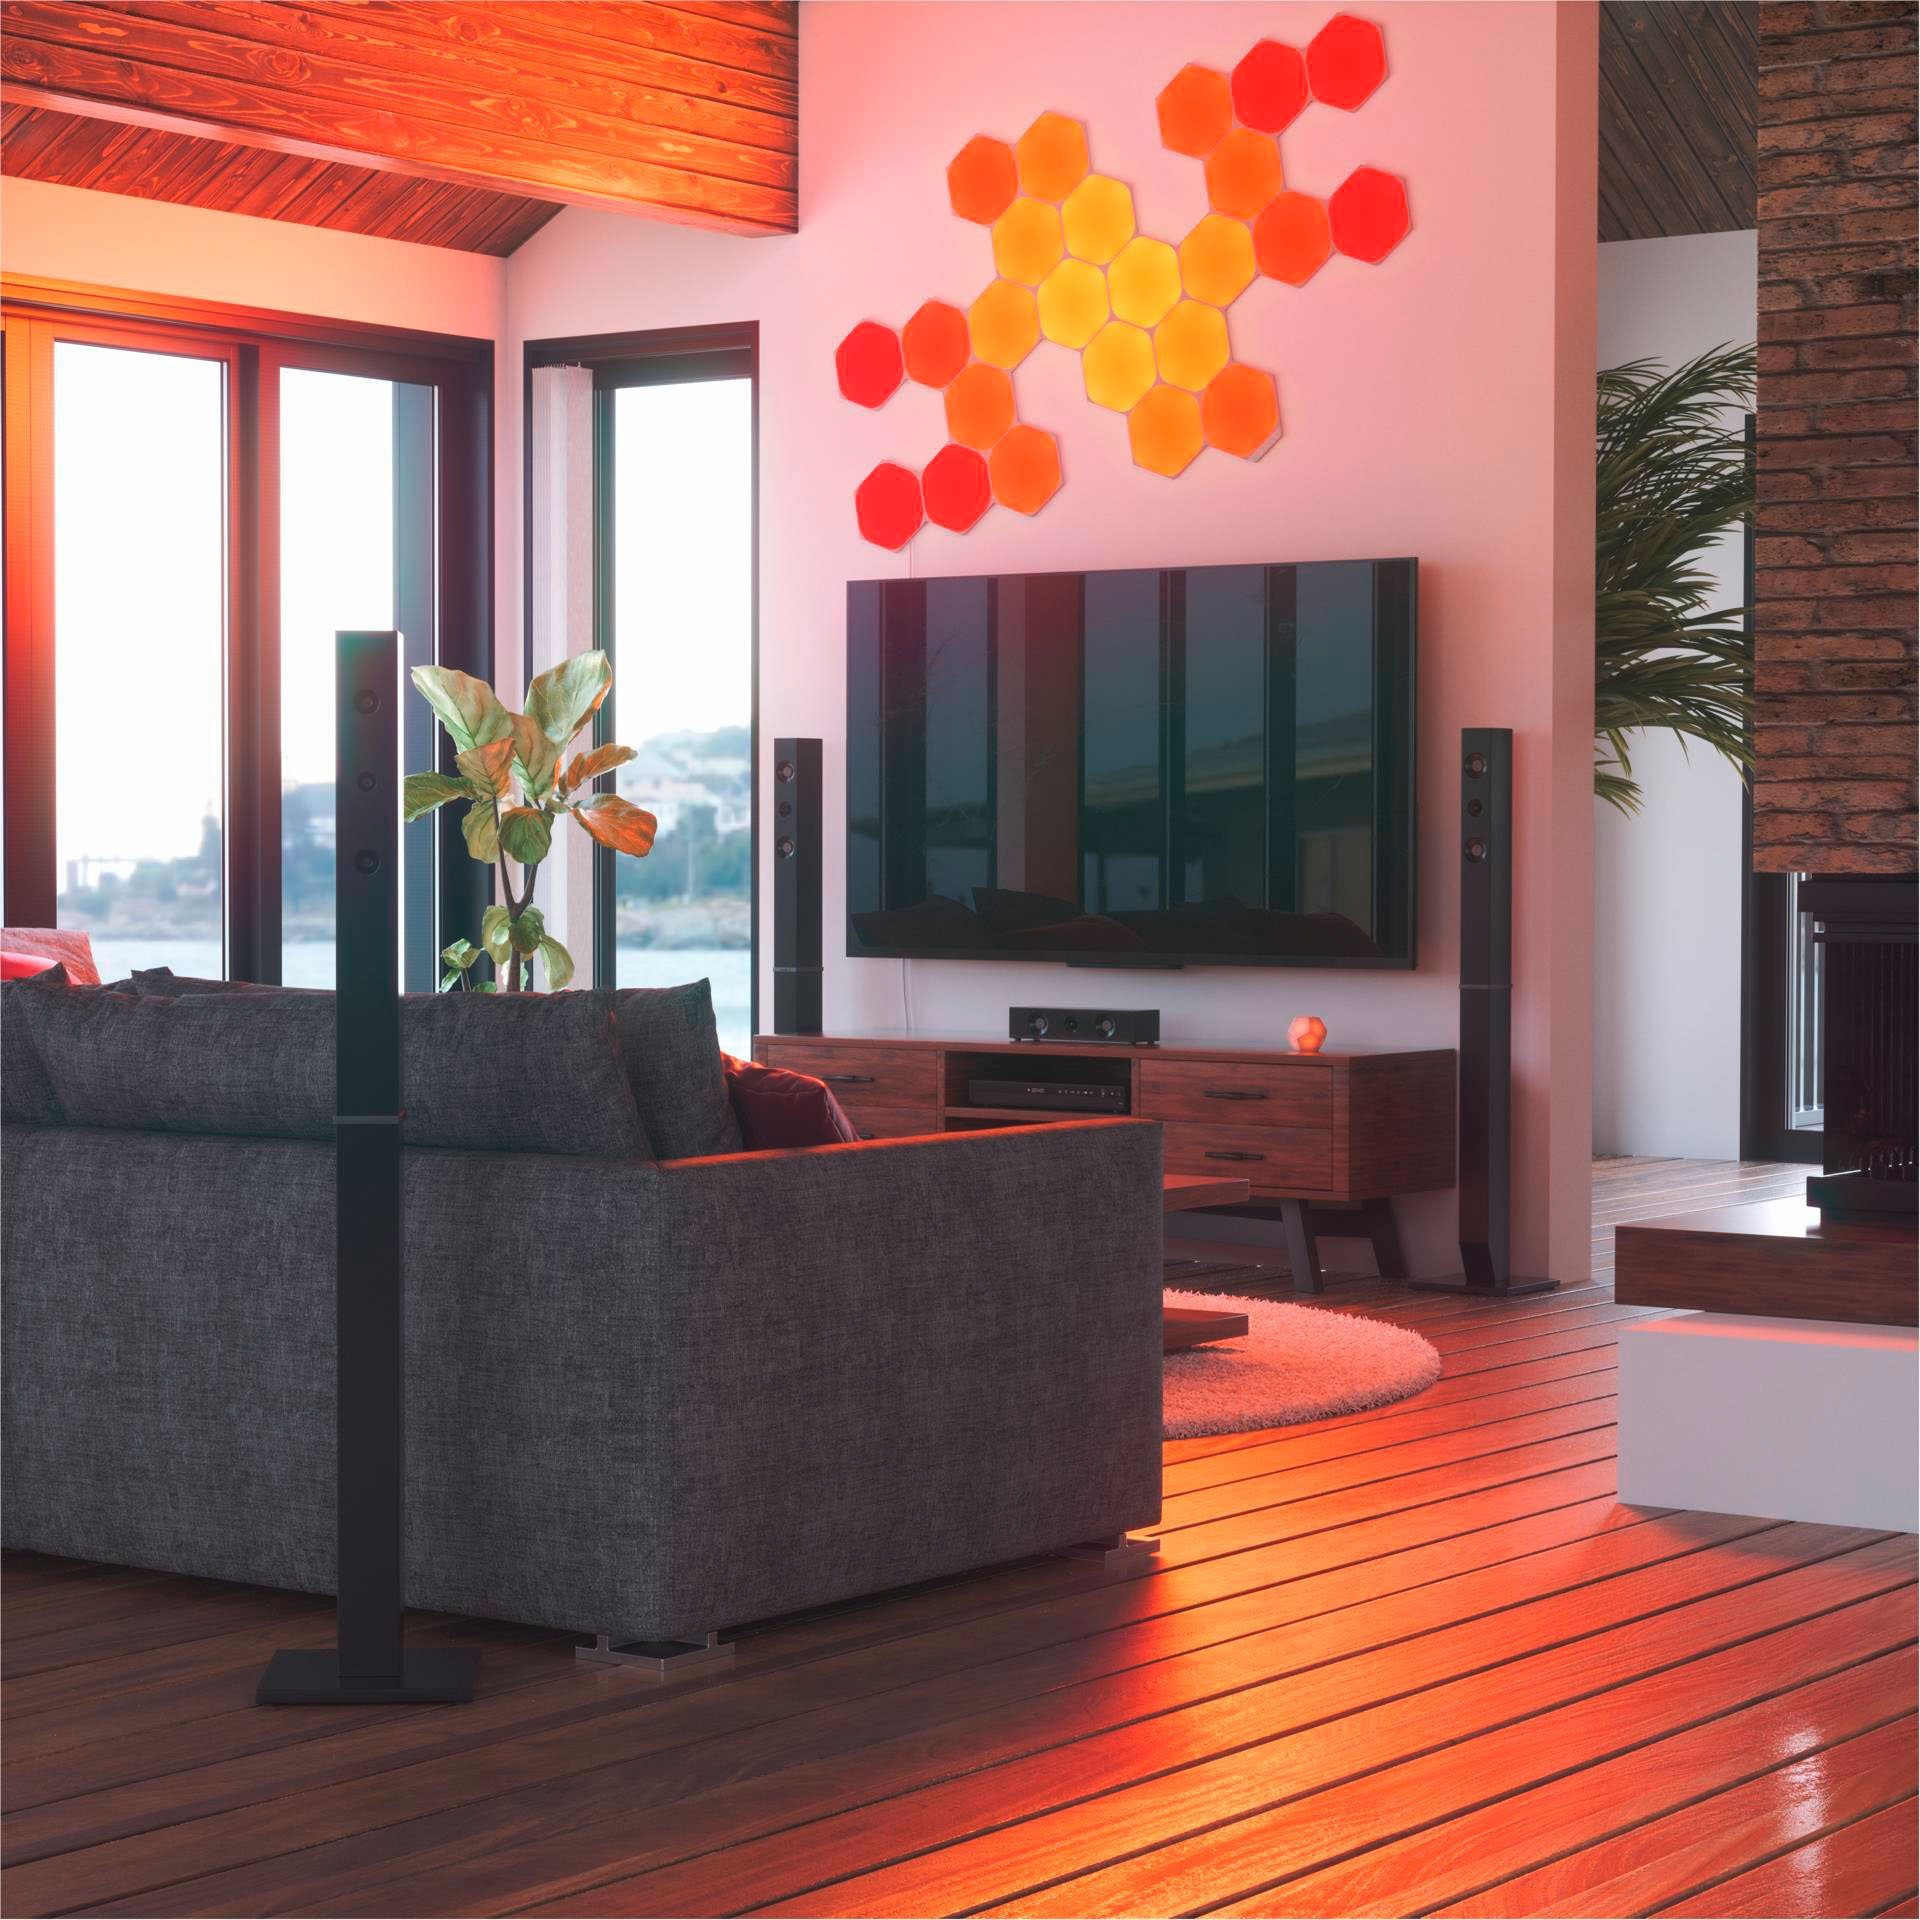 Hexagons, integriert, nanoleaf Panel fest Dimmfunktion, Farbwechsler Shapes LED LED